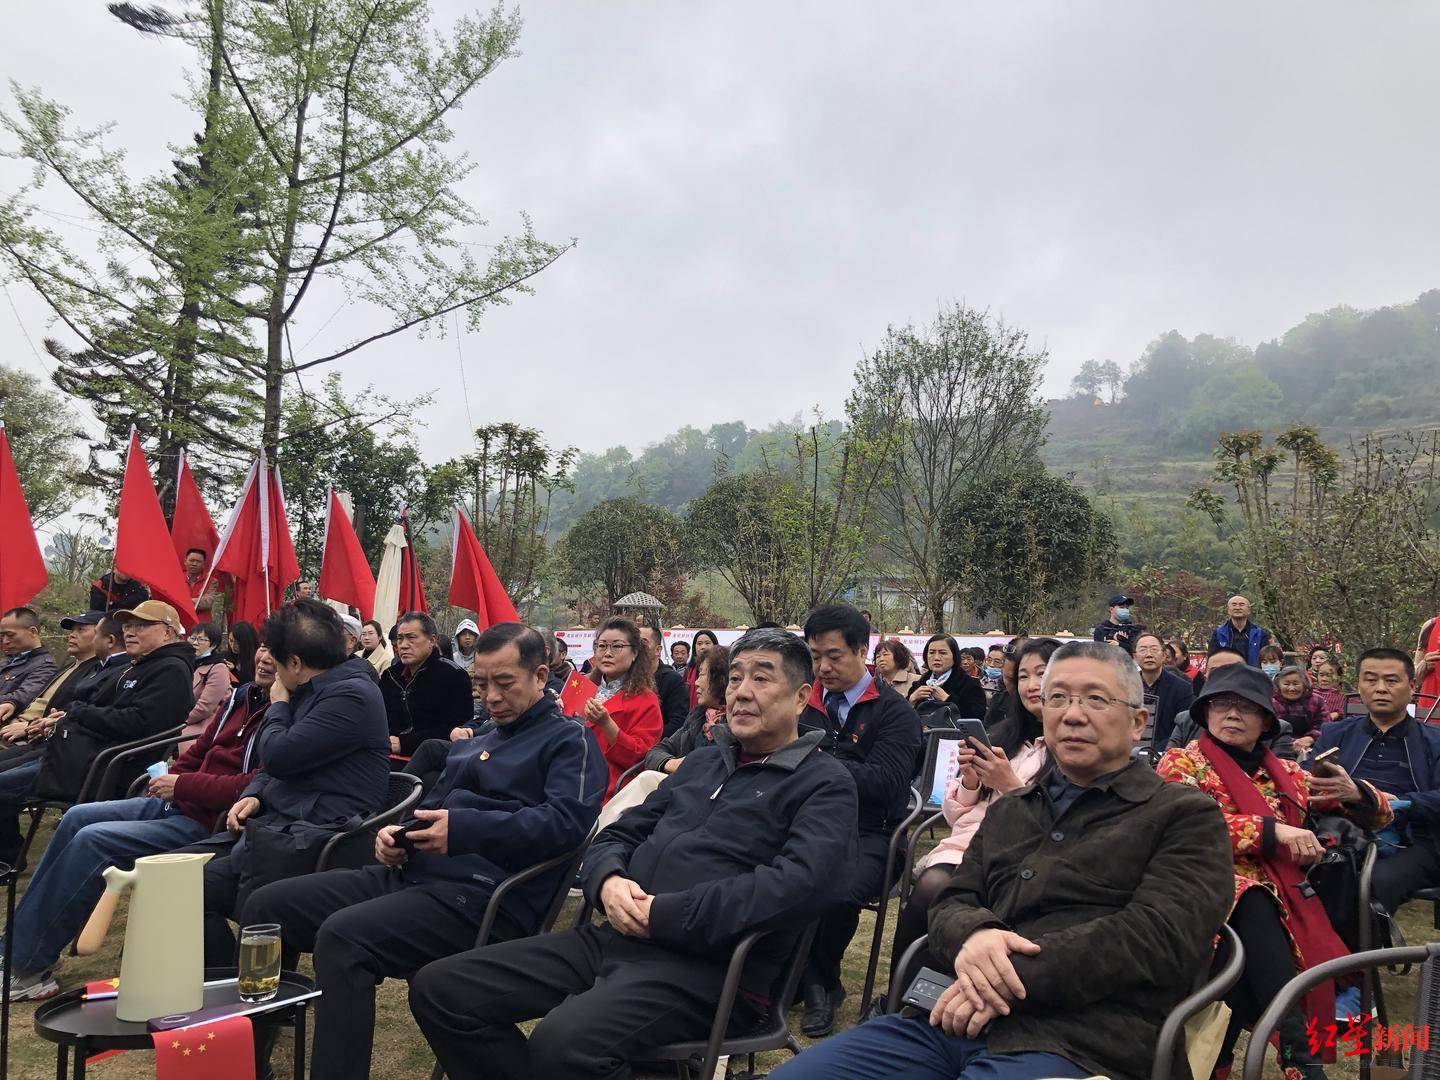 中国首个场景文学示范营地“龙泉山·场景文学营地”开启